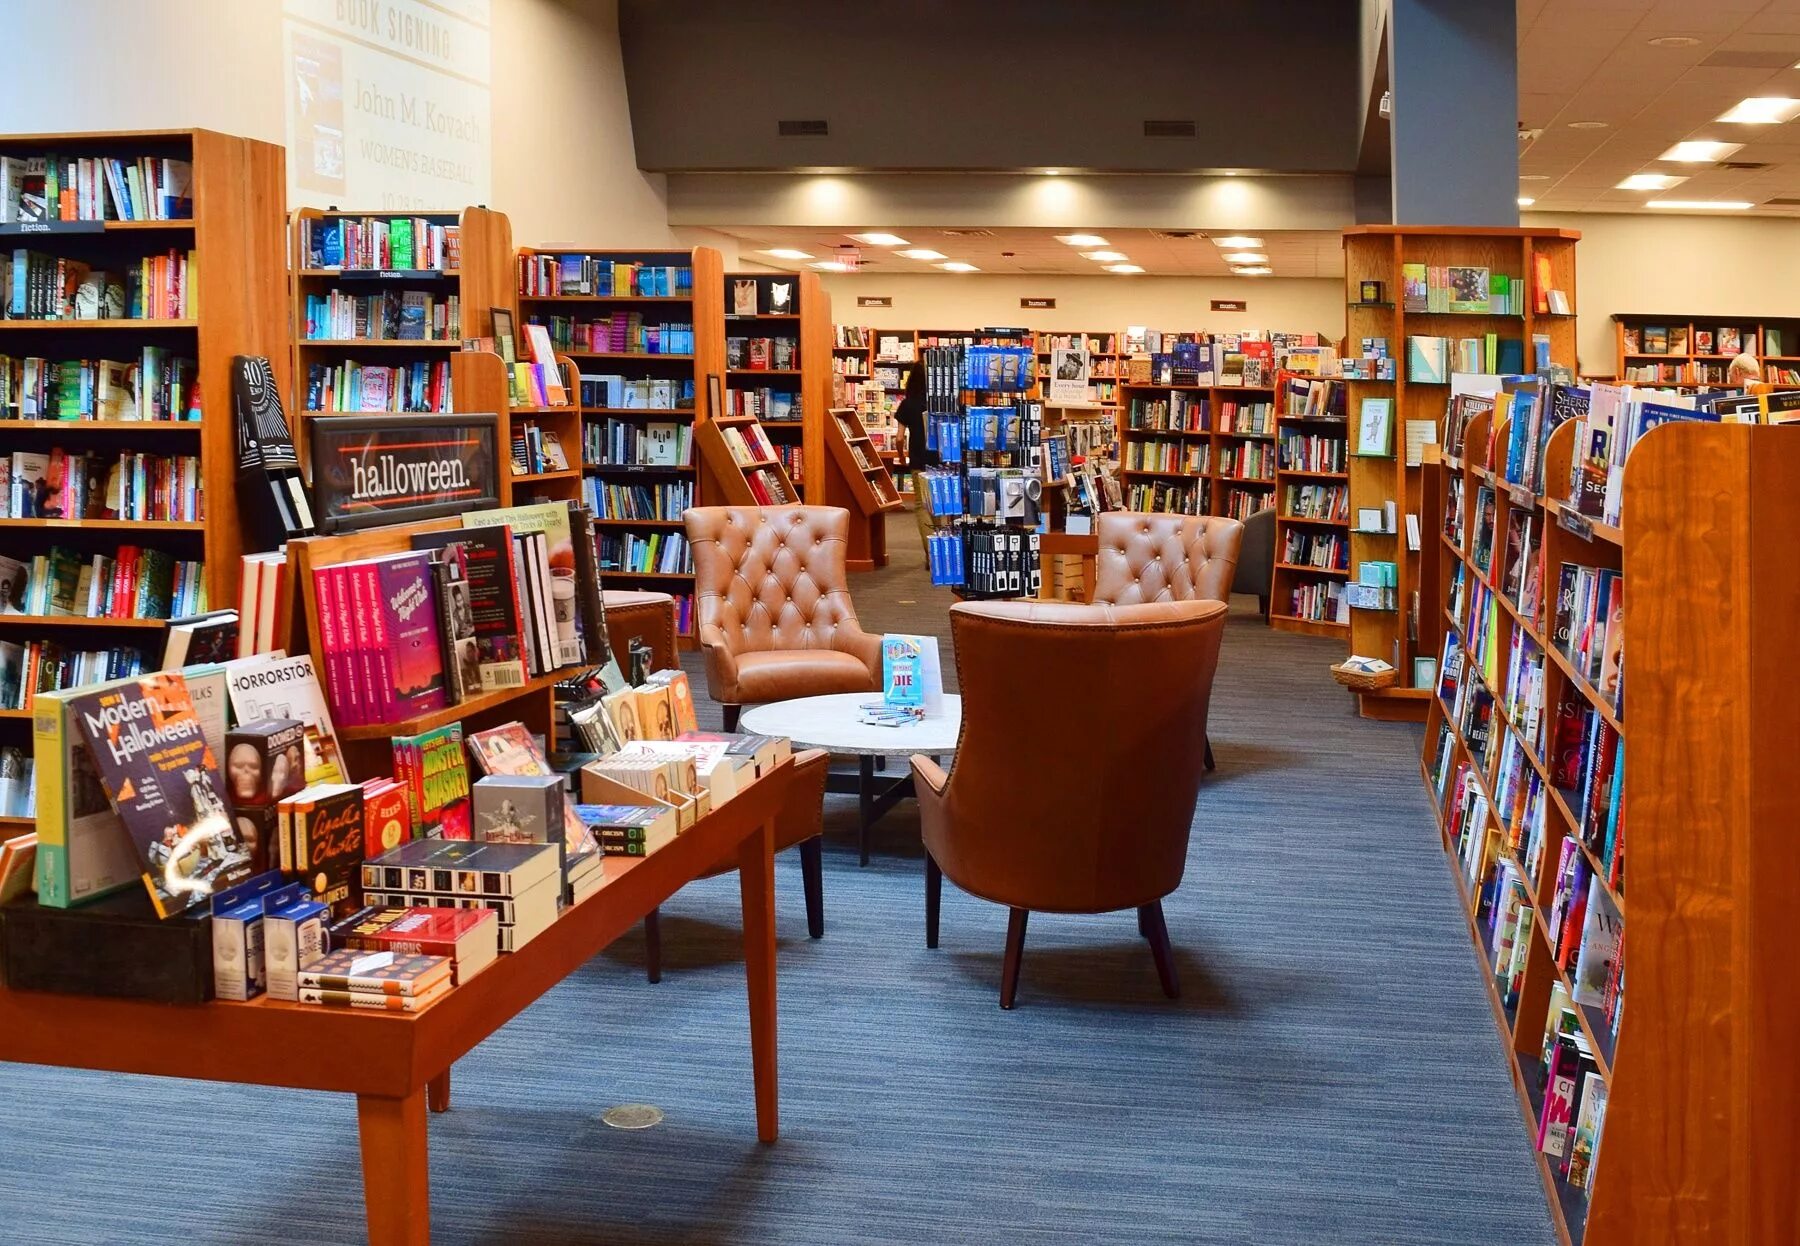 Ld library. Книжный магазин. Красивый книжный магазин. Bookshop книжный магазин. Книжный магазин внутри.